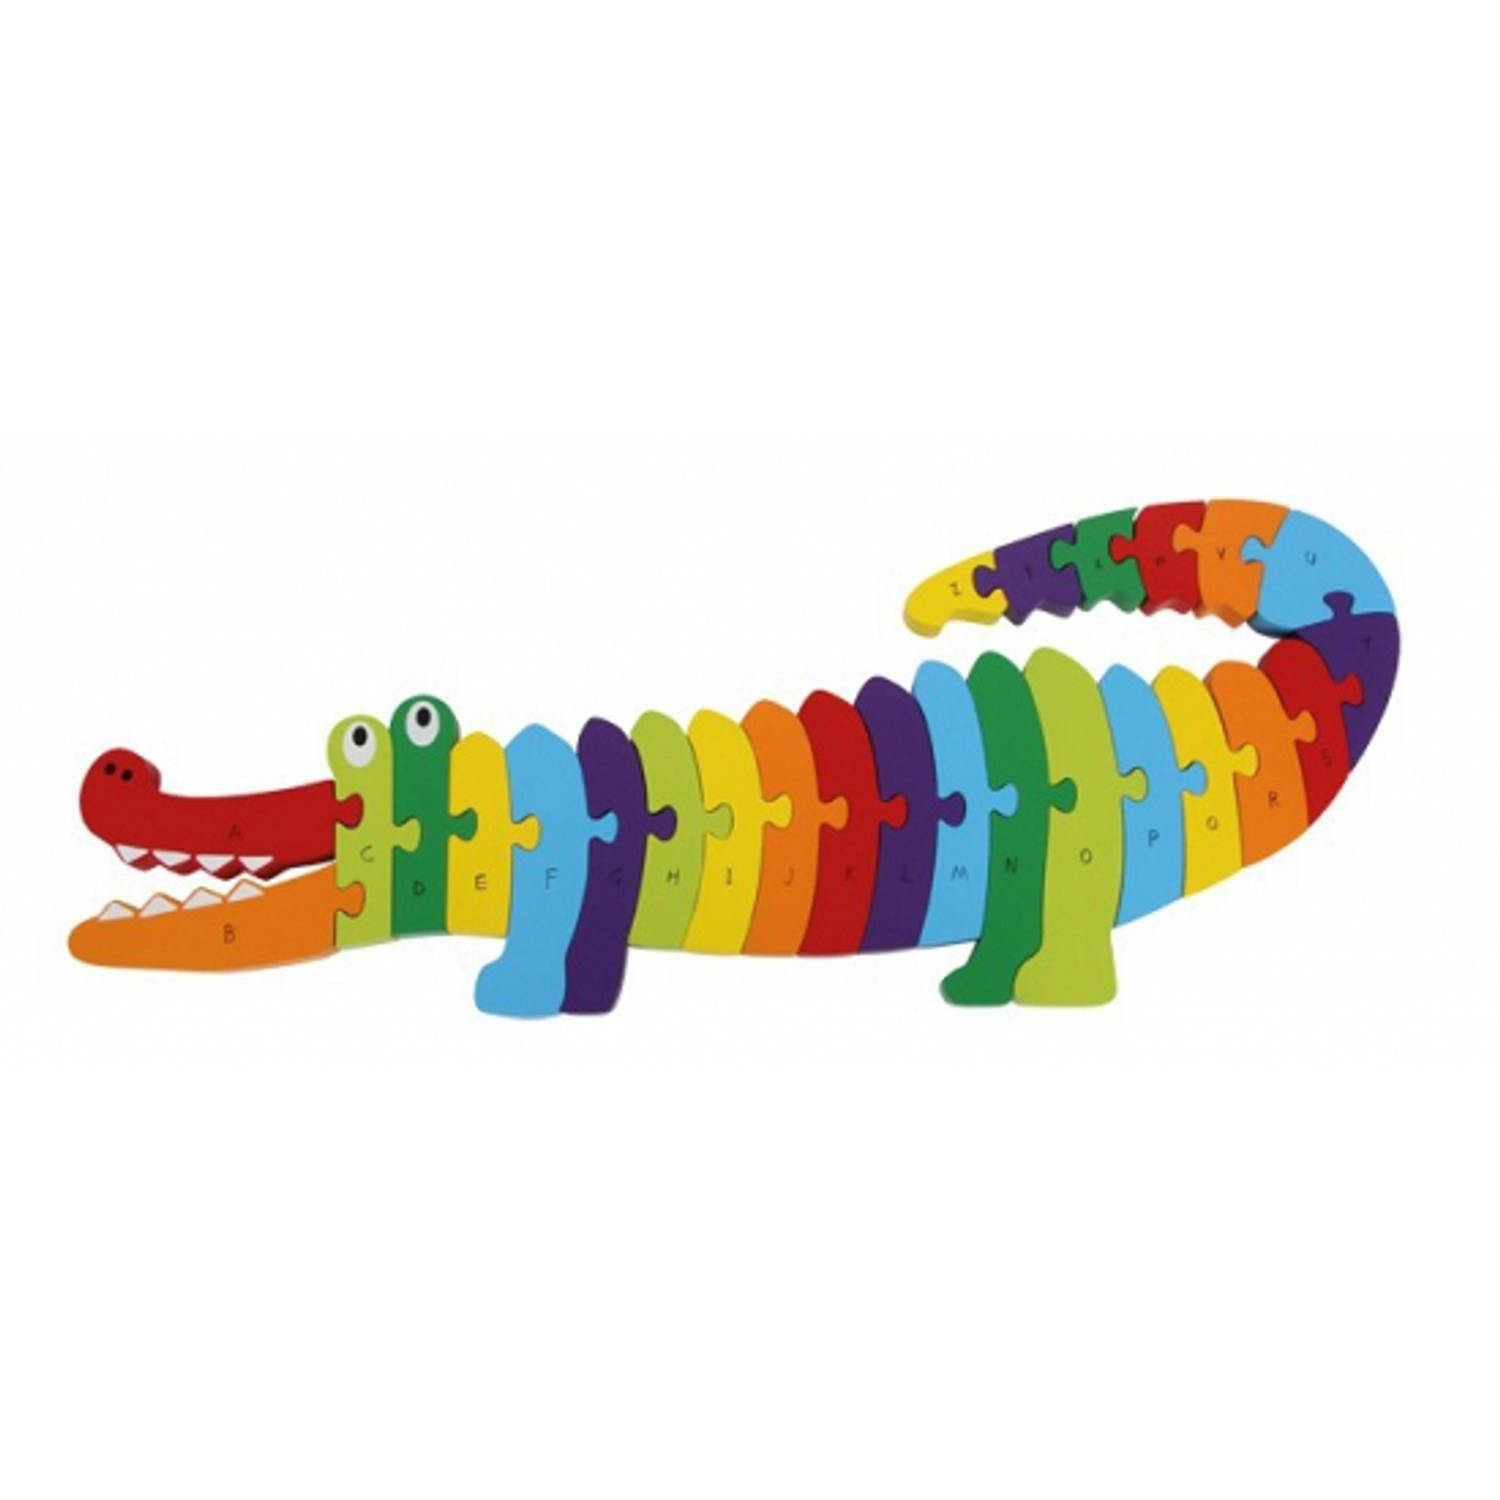 Leerzame Alfabet Puzzel Krokodil - 54 Cm - Educatief Speelgoed